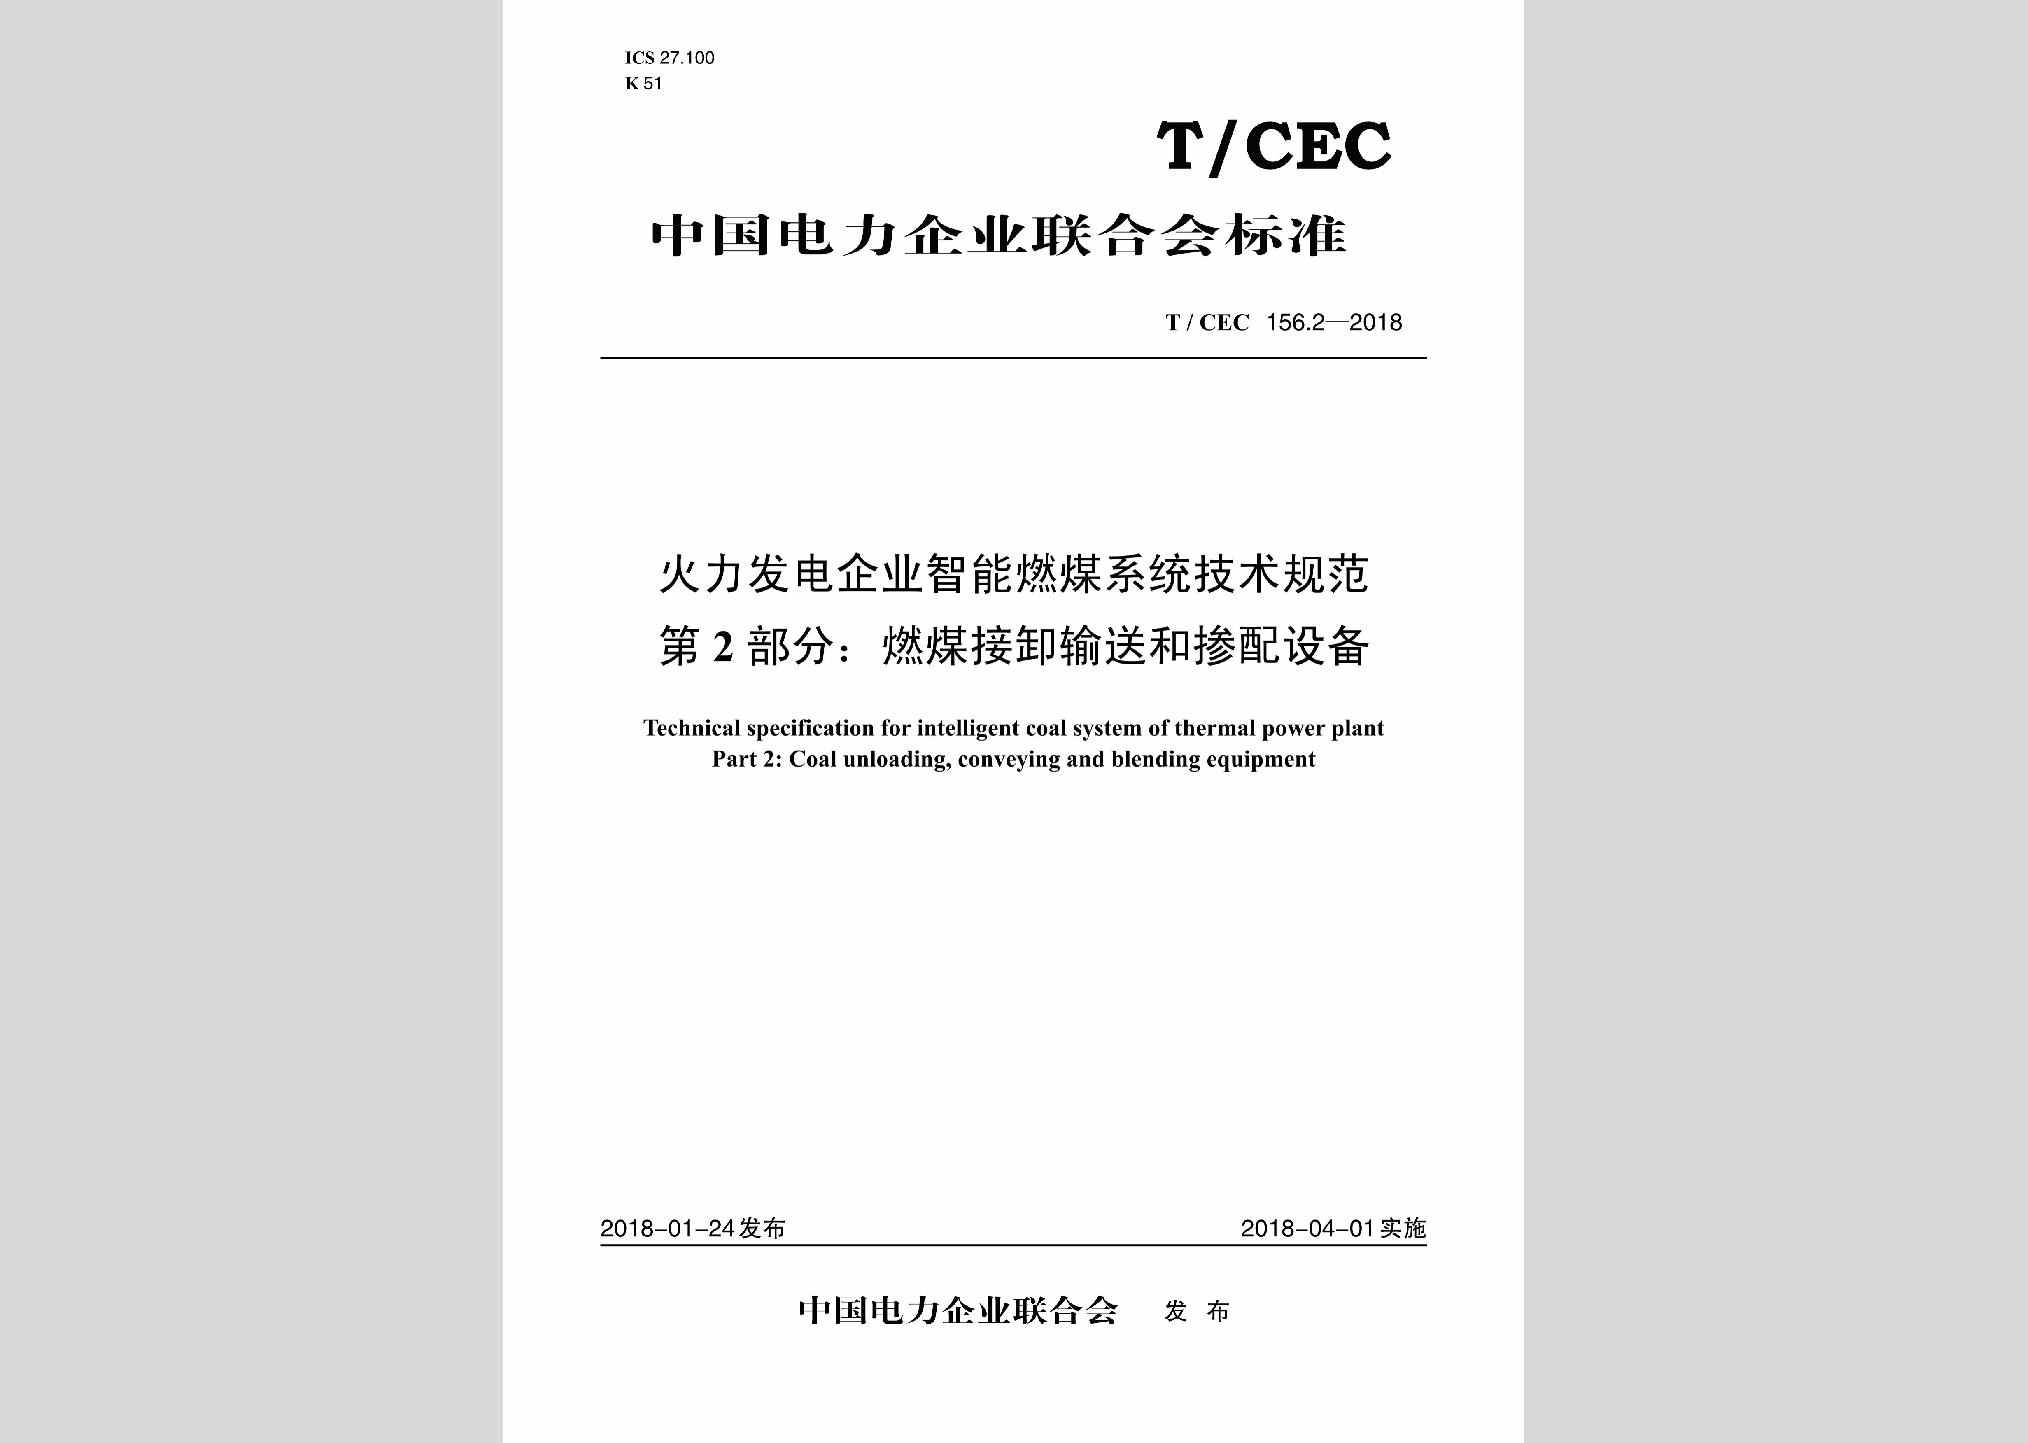 T/CEC156.2-2018：火力发电企业智能燃煤系统技术规范第2部分:燃煤接卸输送和掺配设备